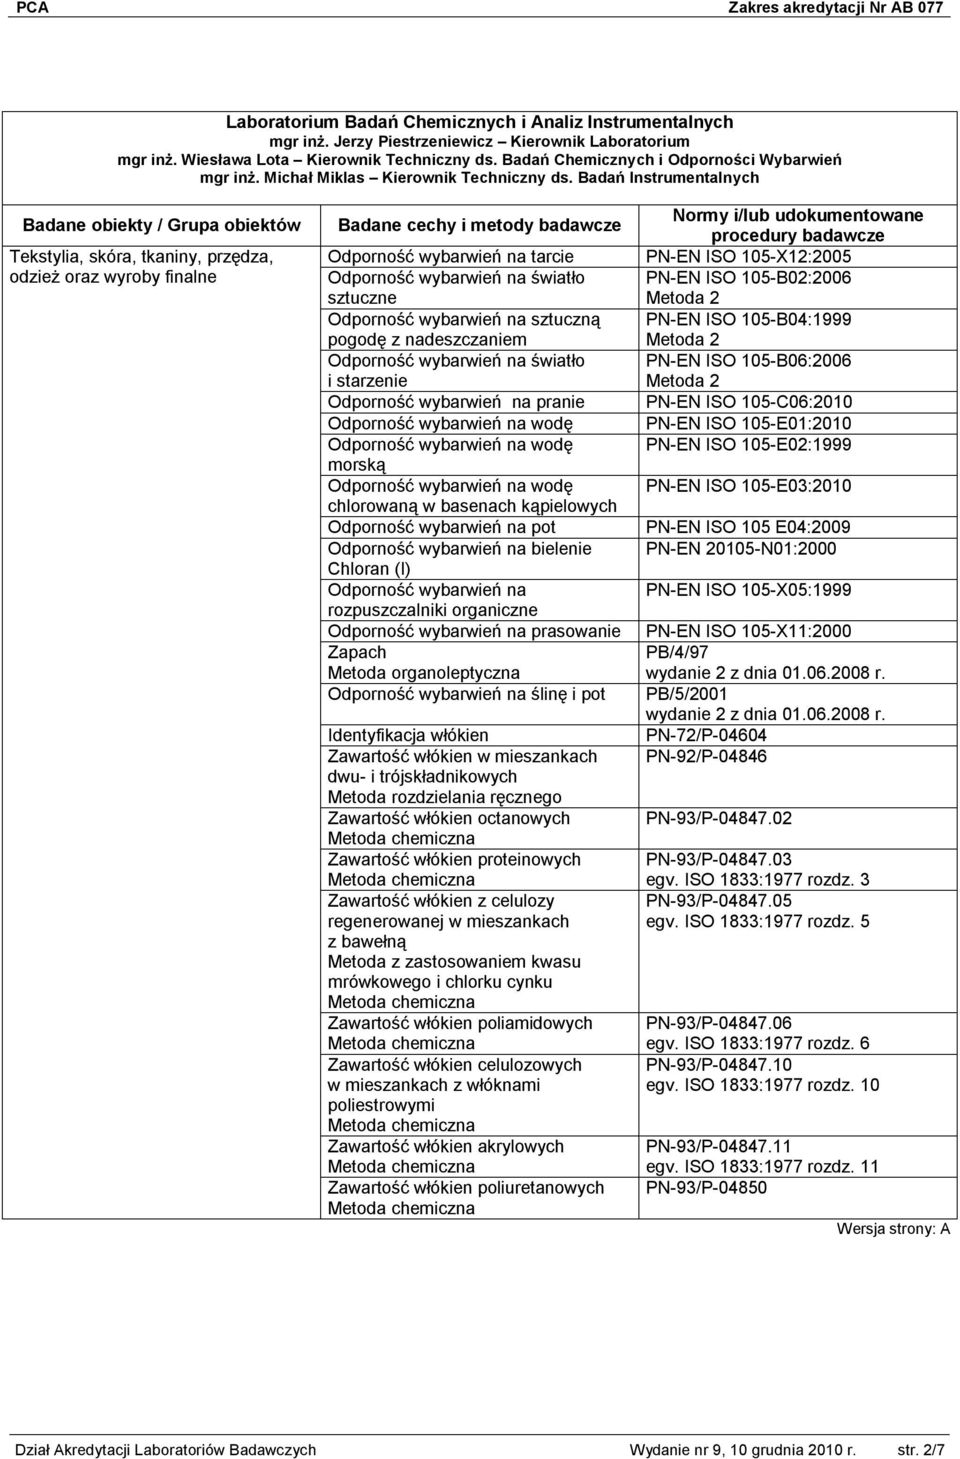 Badań Instrumentalnych Odporność wybarwień na tarcie PN-EN ISO 105-X12:2005 Odporność wybarwień na światło PN-EN ISO 105-B02:2006 sztuczne Metoda 2 Odporność wybarwień na sztuczną PN-EN ISO